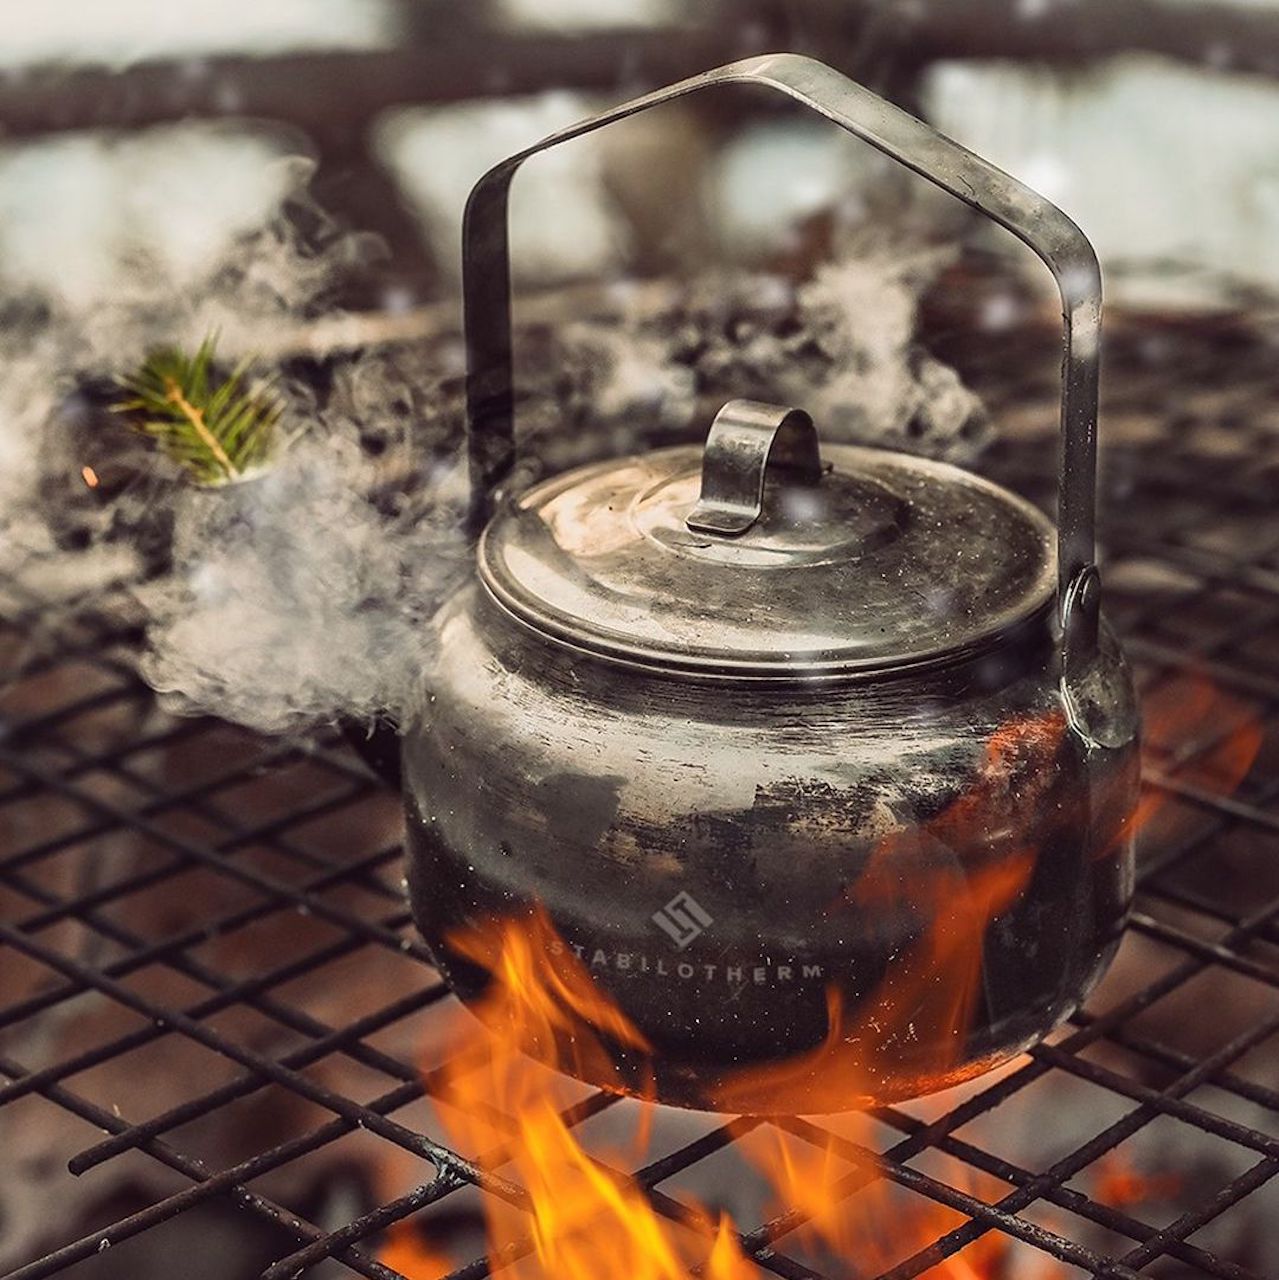 Туристический костровой чайник Stabilotherm Coffee Pot объёмом два литра для похода, кемпинга, пикника